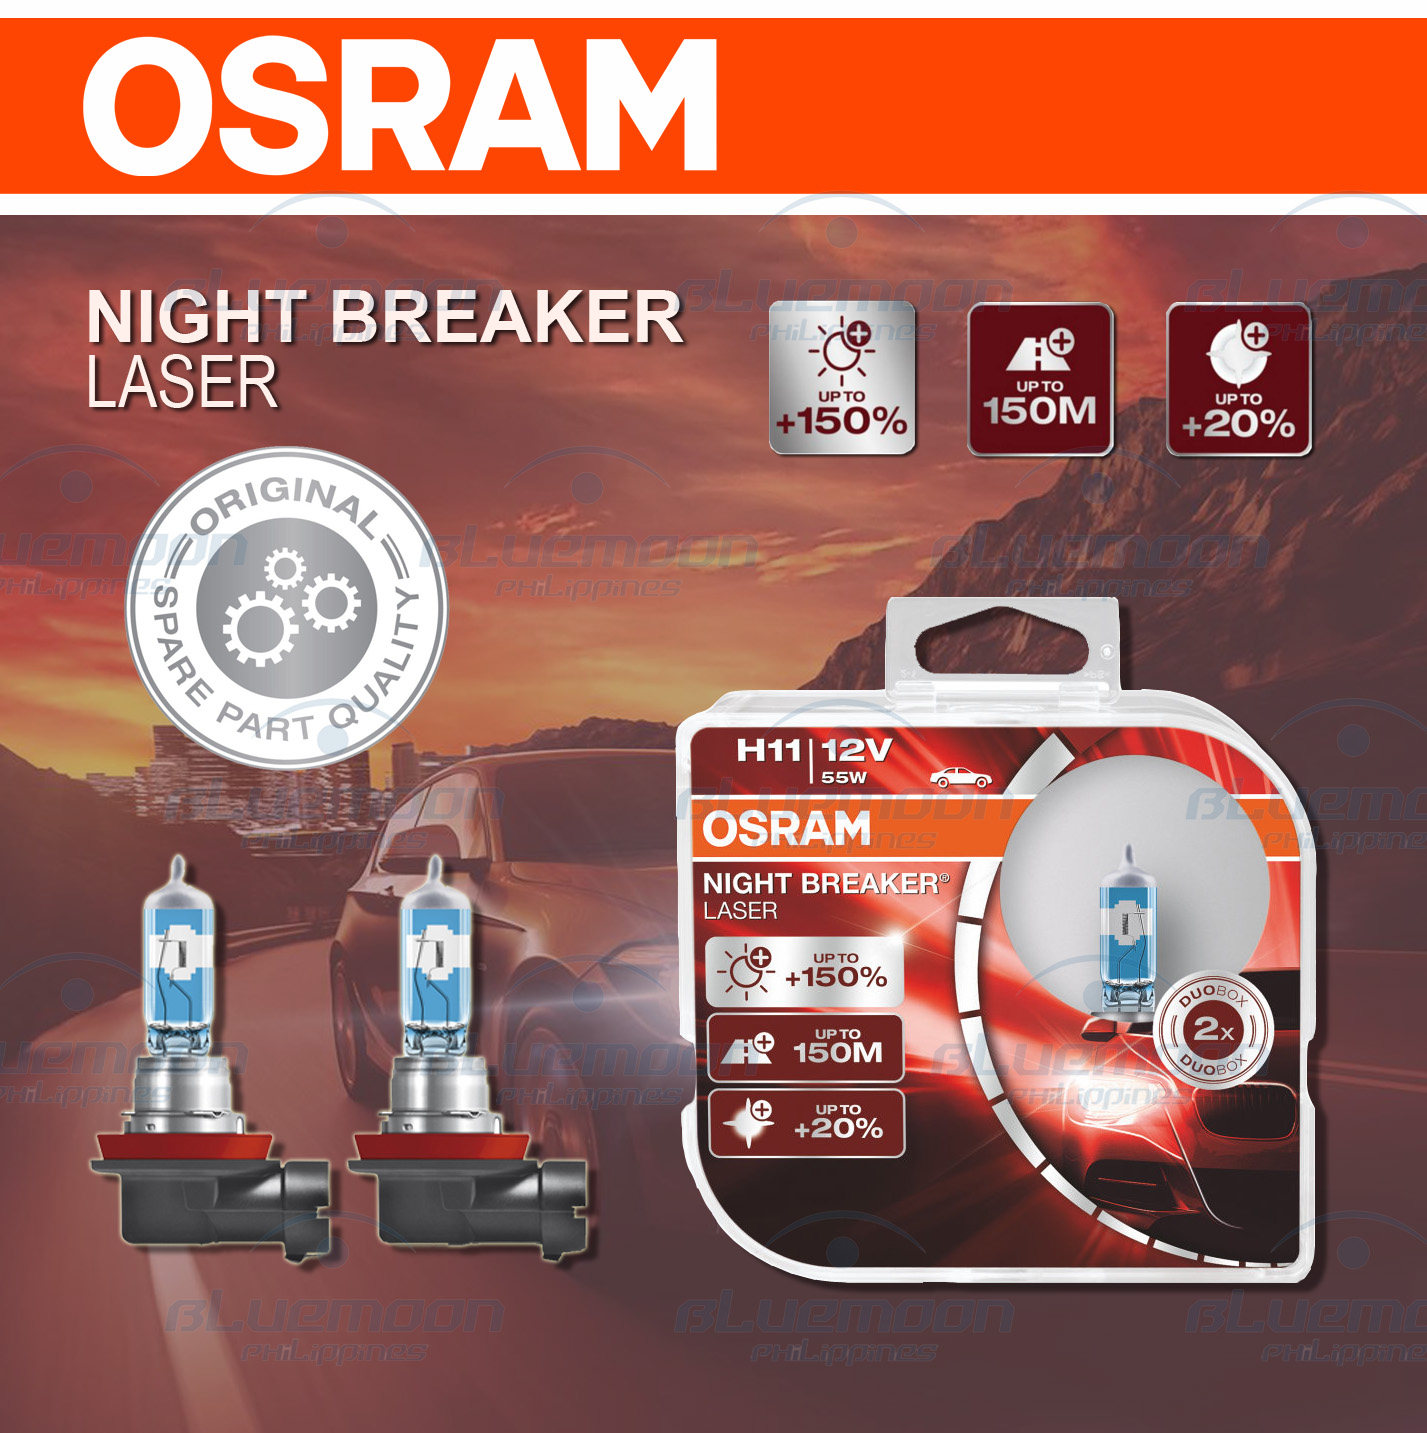 OSRAM Original H11 Night Breaker Laser Next Generation 12V